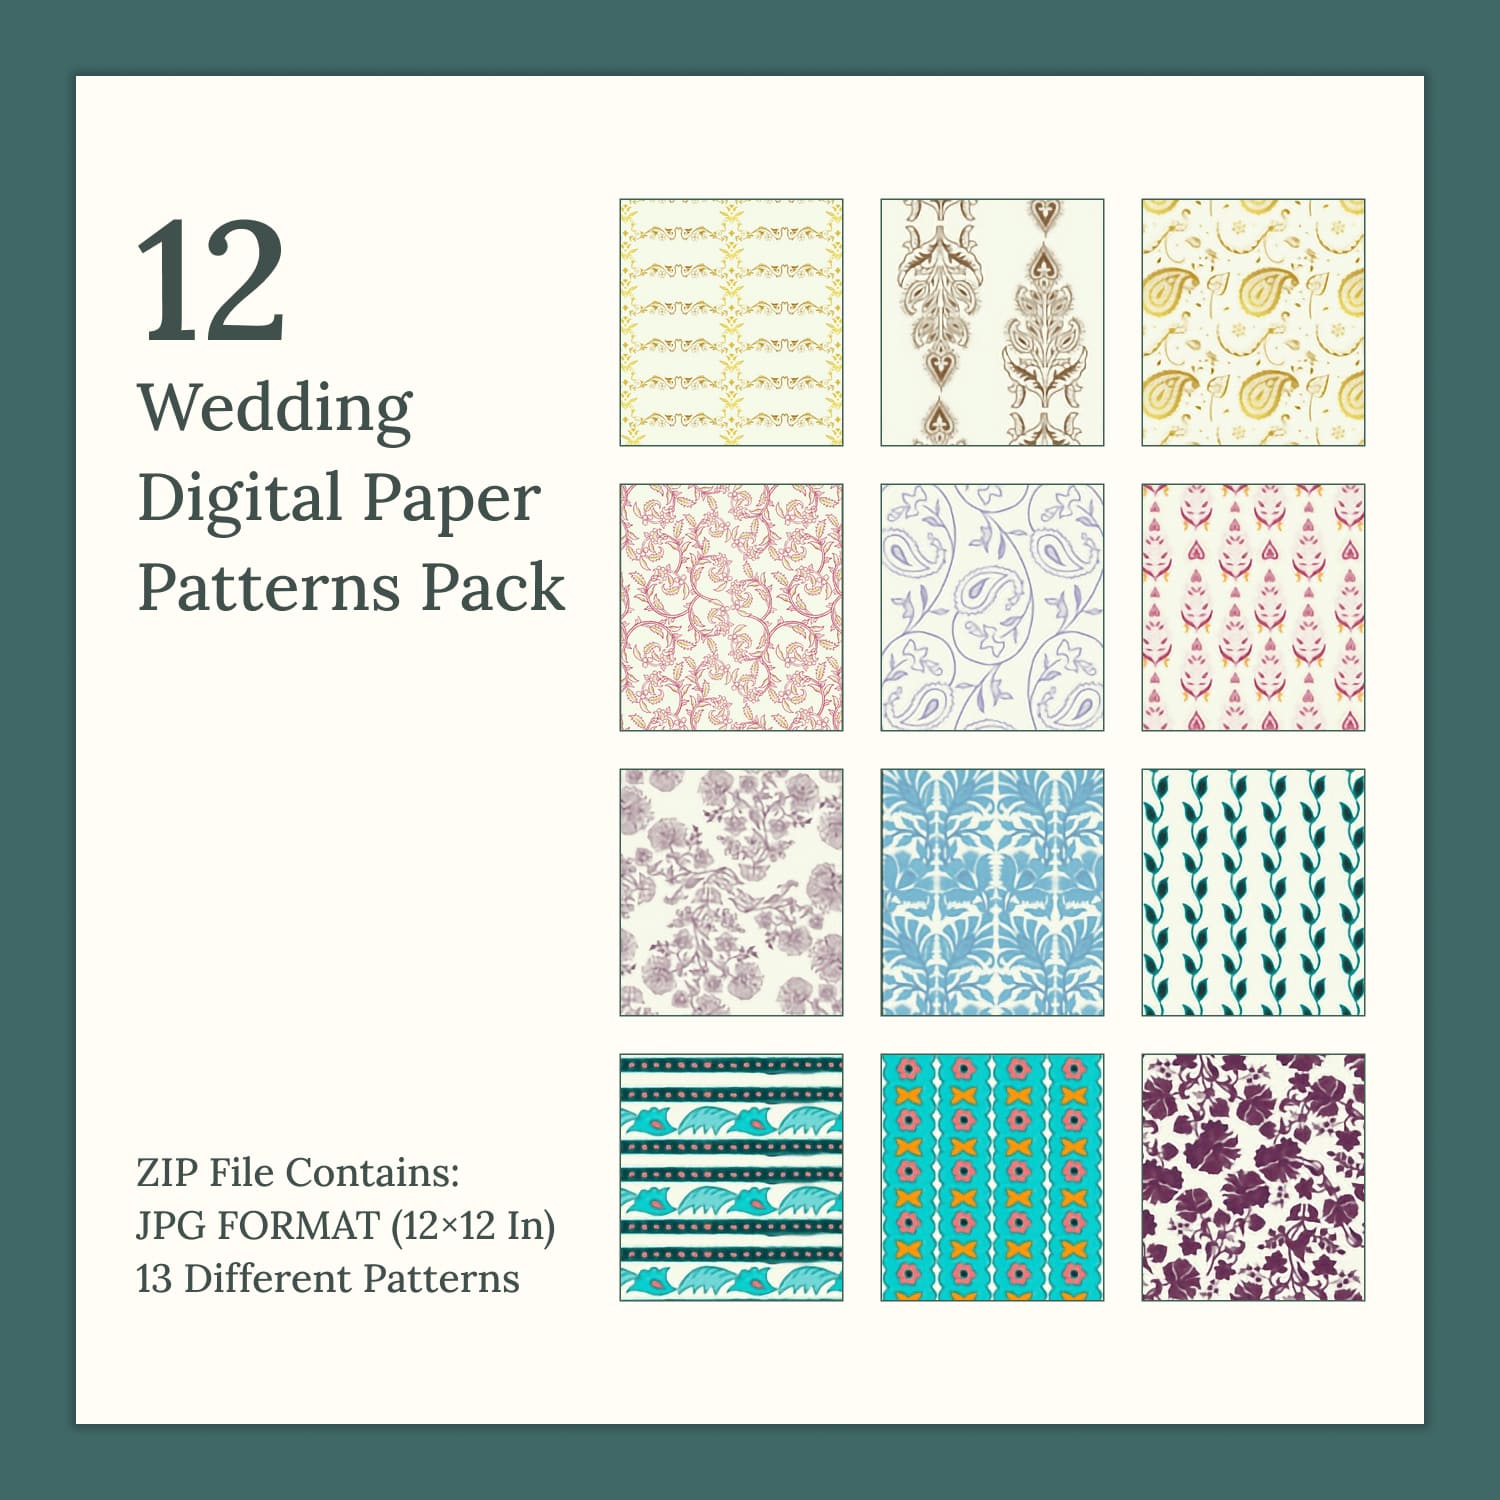 12 Wedding Digital Paper Patterns Pack in JPG Format.